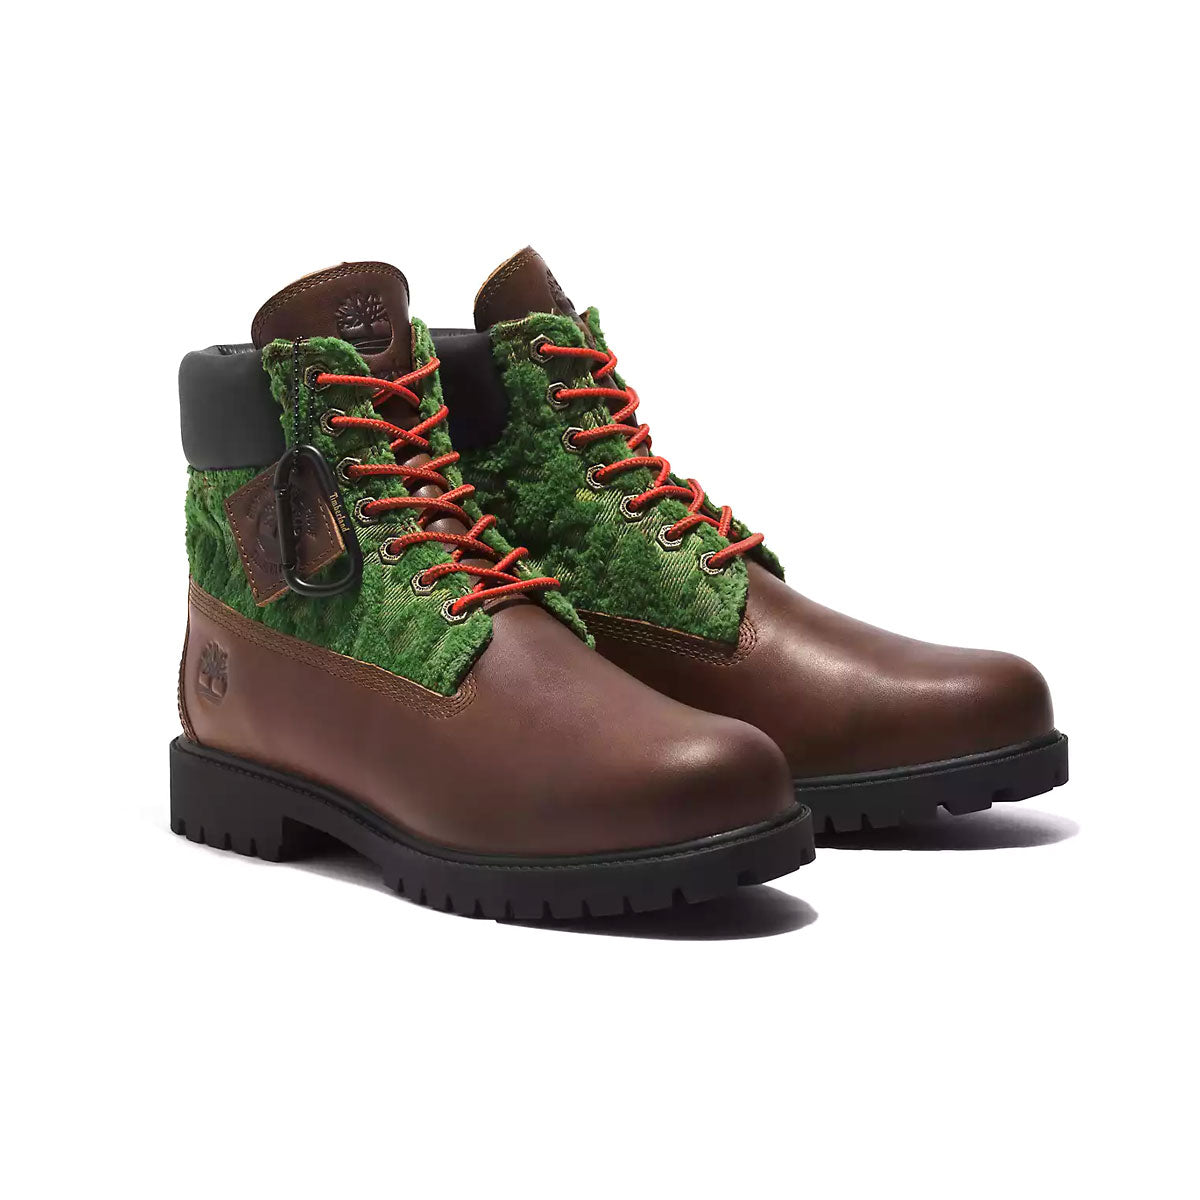 Timberland Men's Heritage Pioneers 6-Inch Waterproof Boots